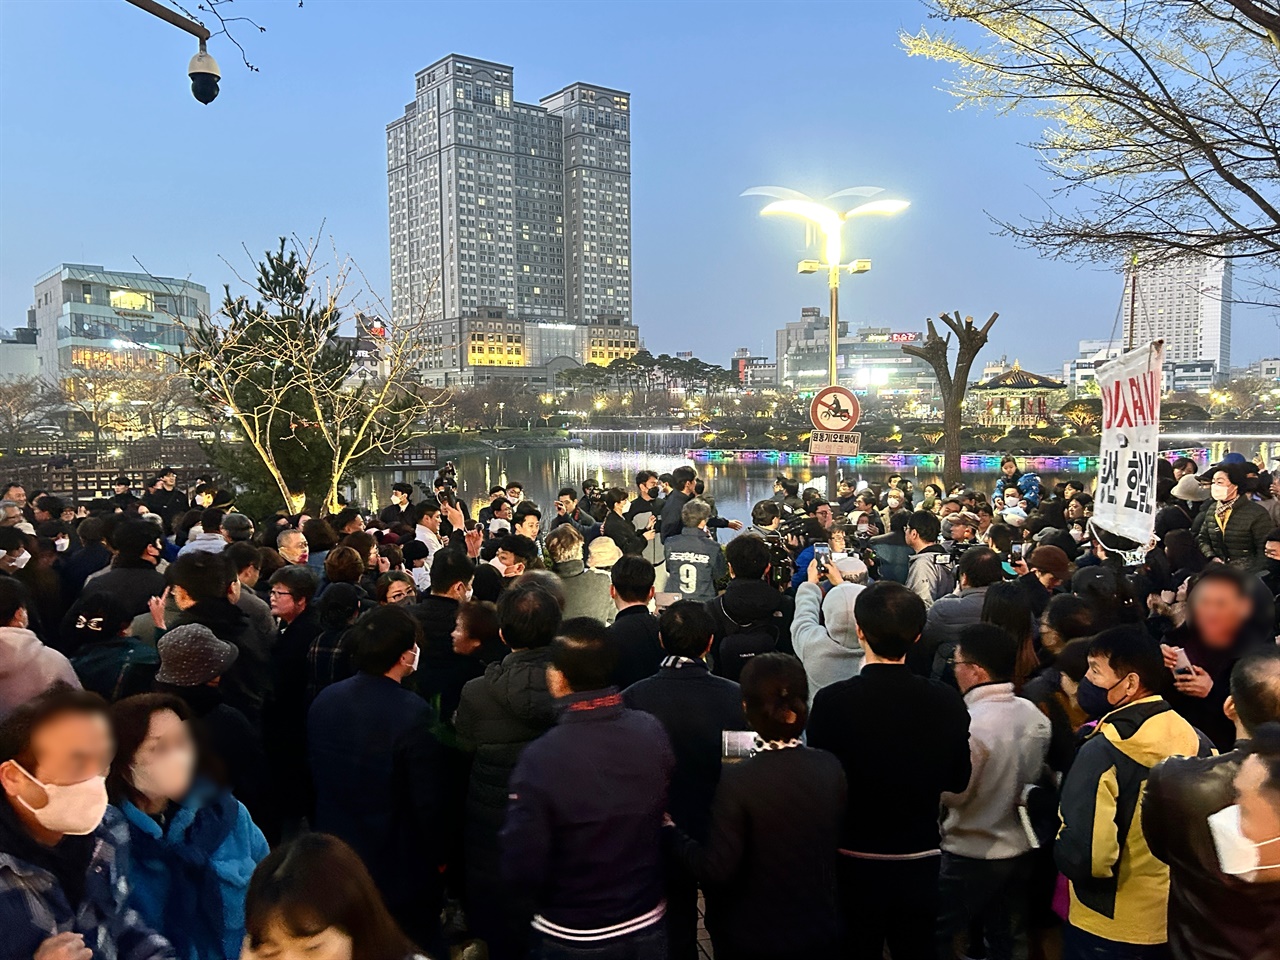 이날 오후 7시 조국 대표가 찾은 서산호수공원 인근 거리는 많은 지지자들이 모이면서 최근 조국혁신당의 인기를 실감케 했다.